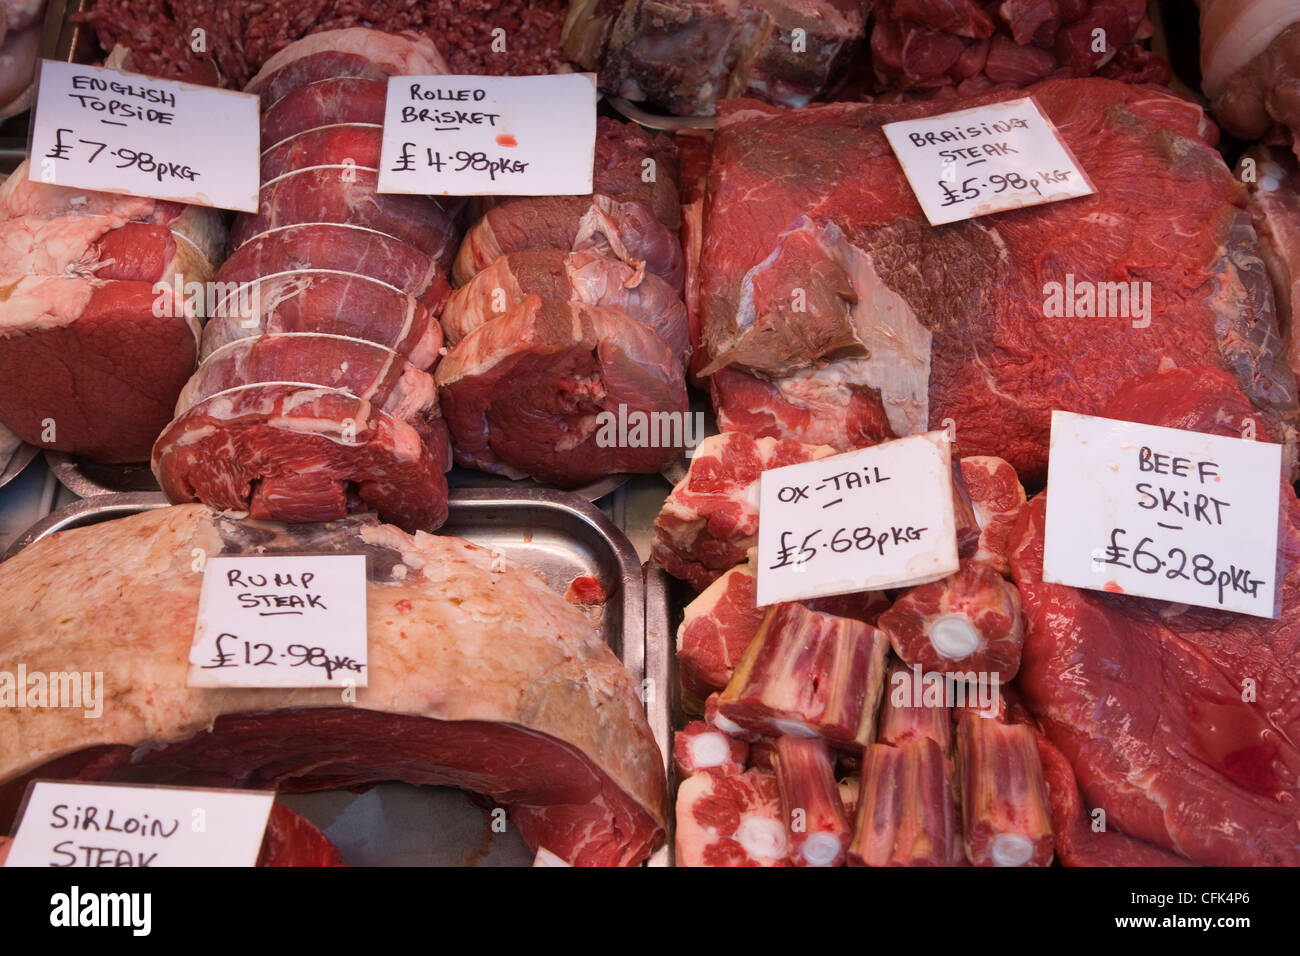 Carnes rojas: ternera, cerdo, cordero, rabo de toro, articulaciones y chuletas en la pantalla en una carnicería de la ventana Foto de stock